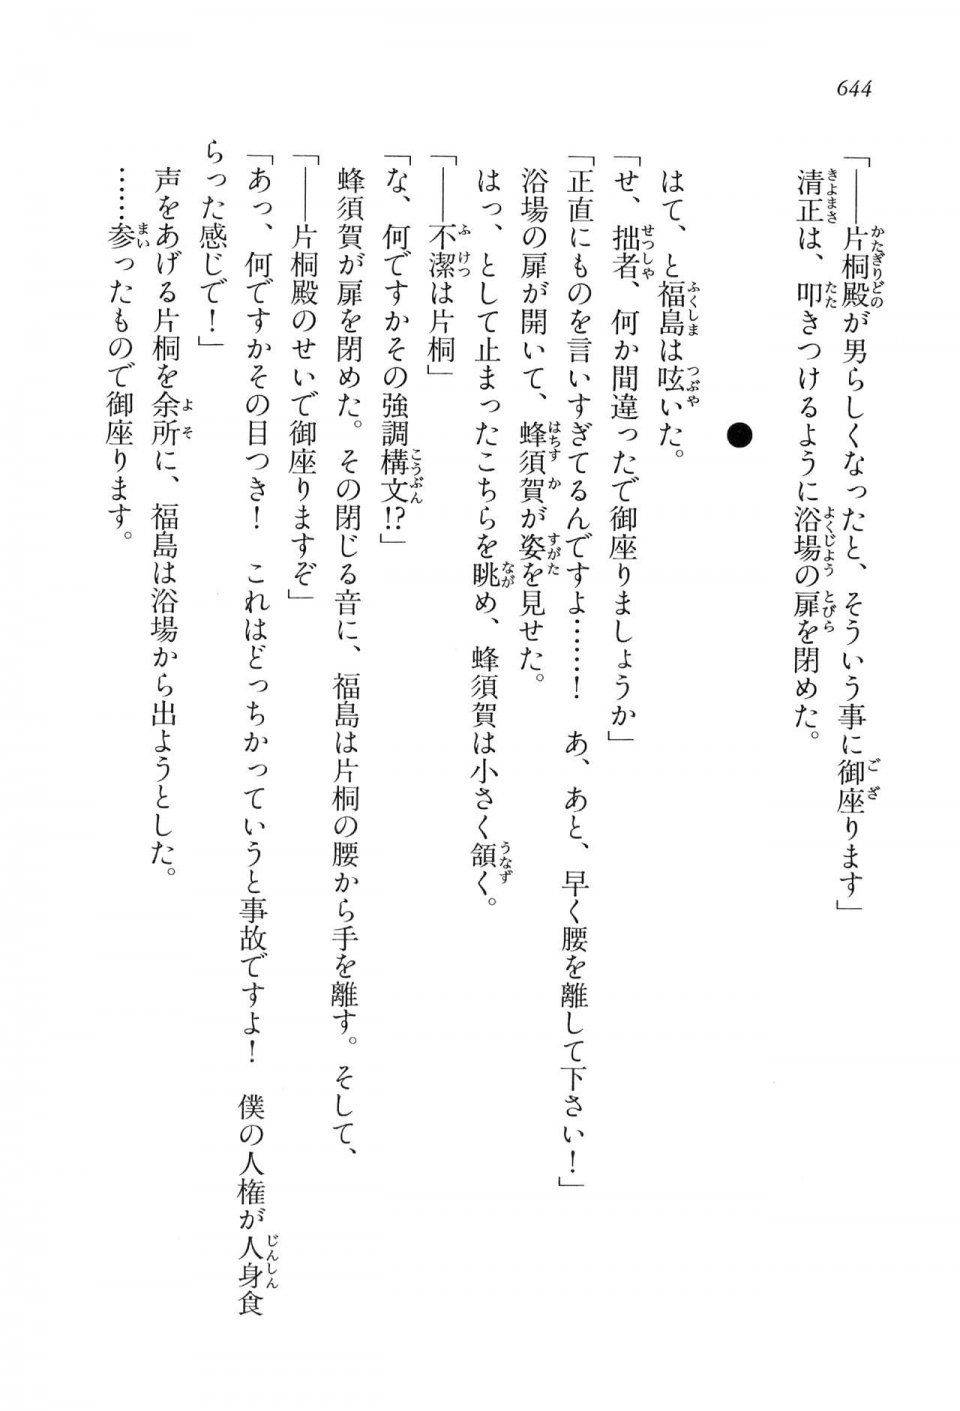 Kyoukai Senjou no Horizon LN Vol 16(7A) - Photo #644